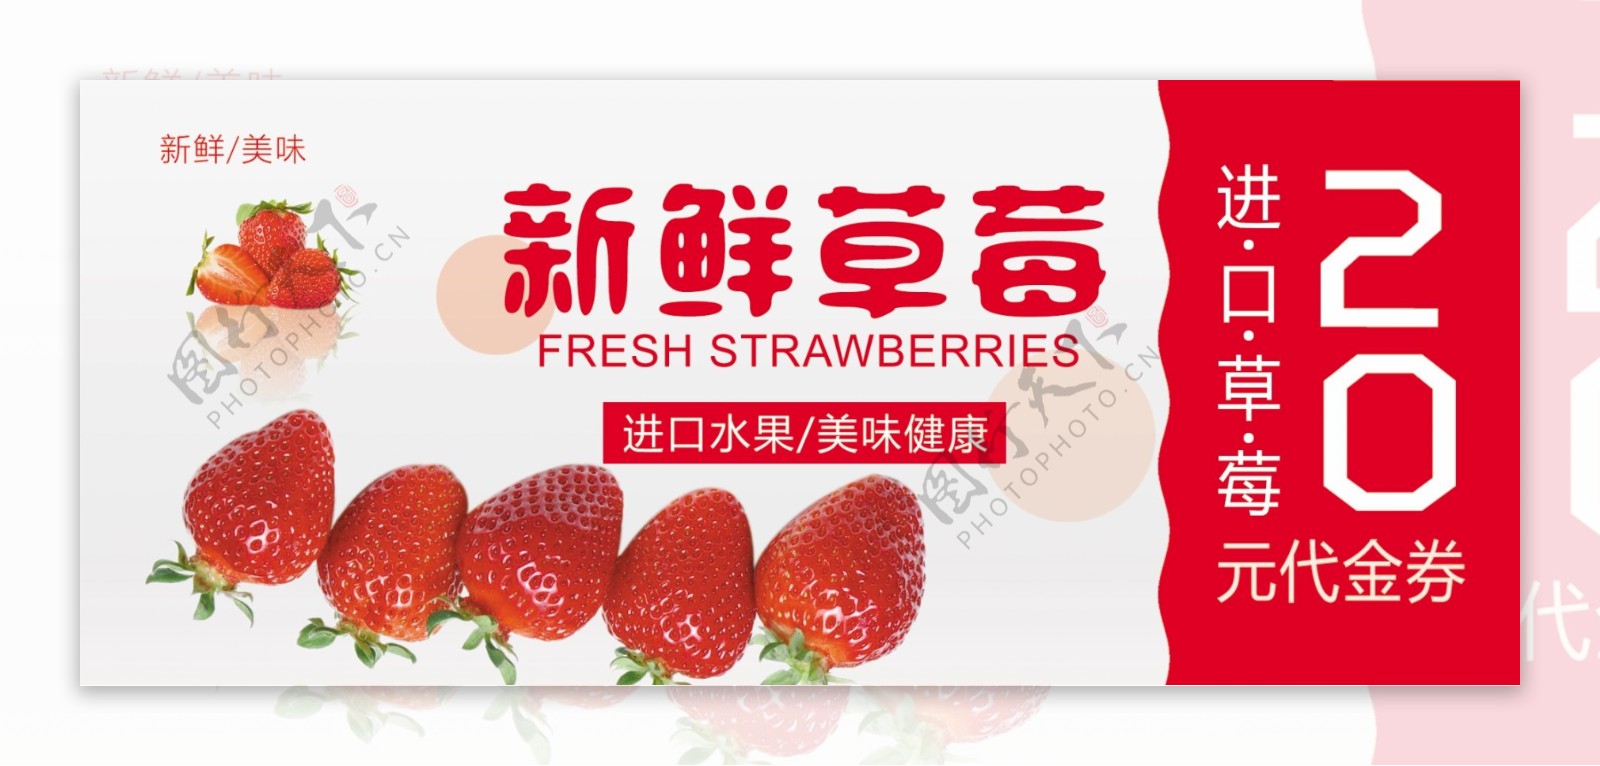 新鲜草莓代金券